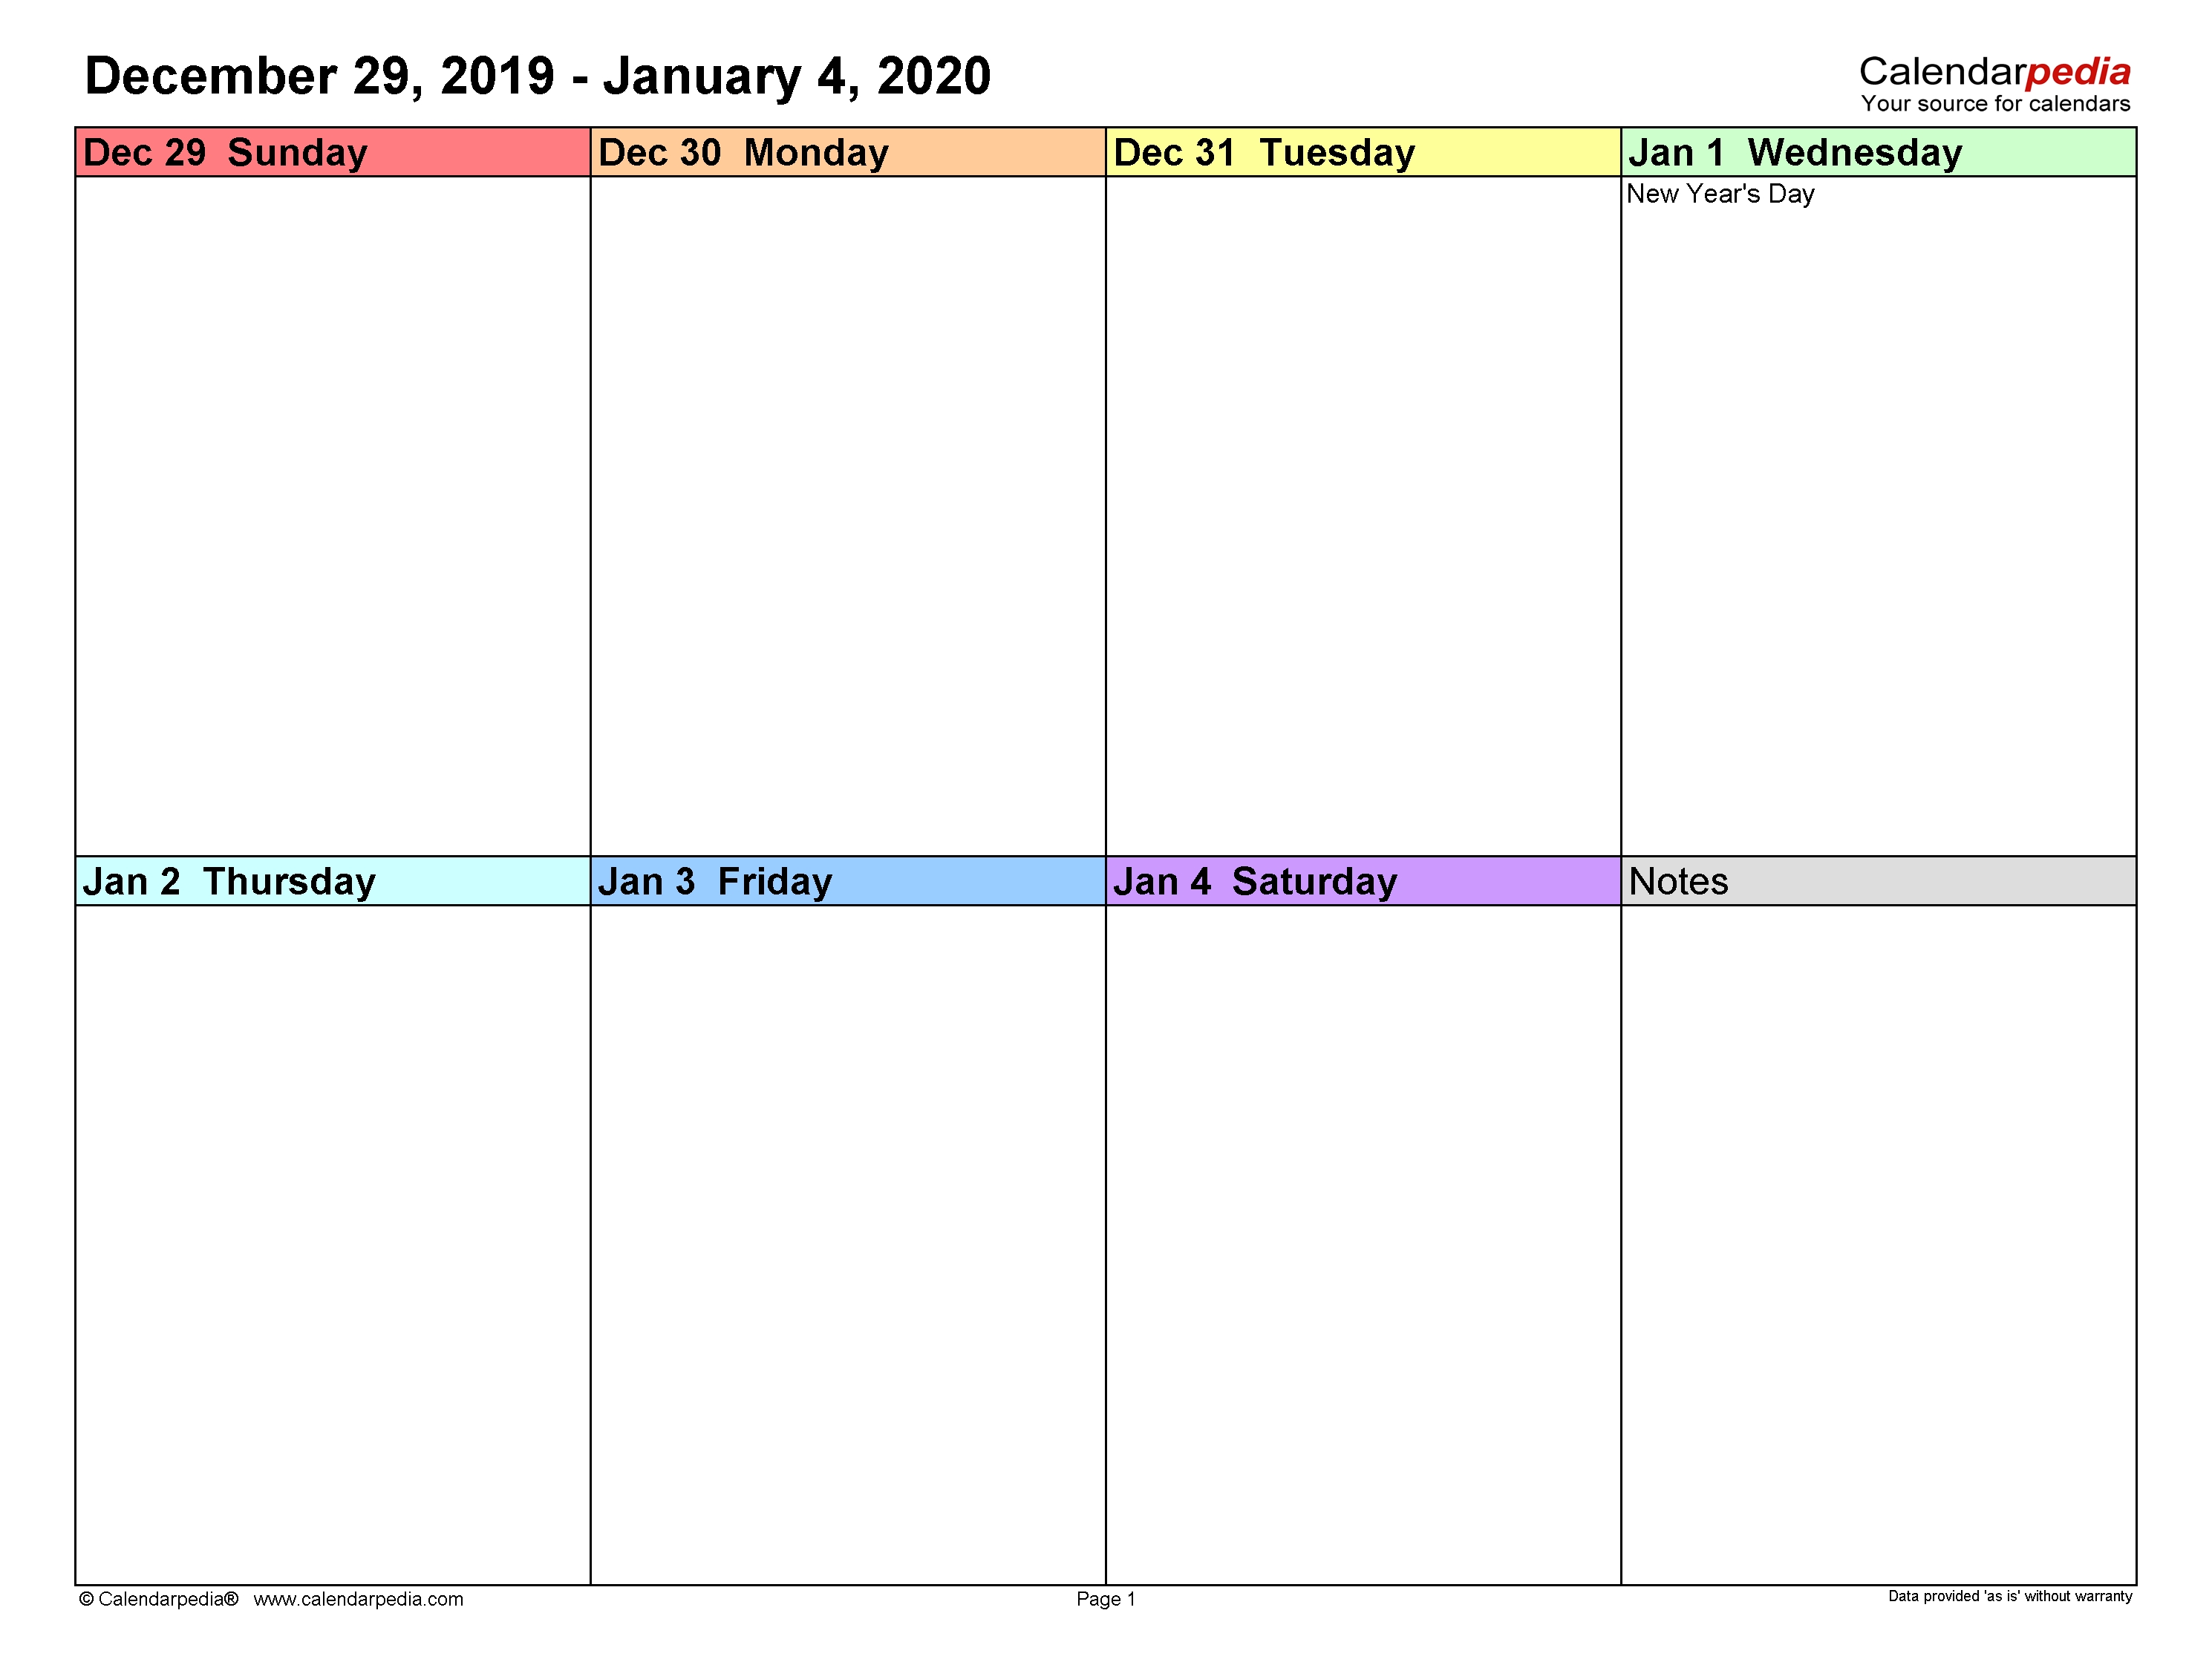 Weekly Calendars 2020 For Word - 12 Free Printable Templates 1 Week Calendar Template Word